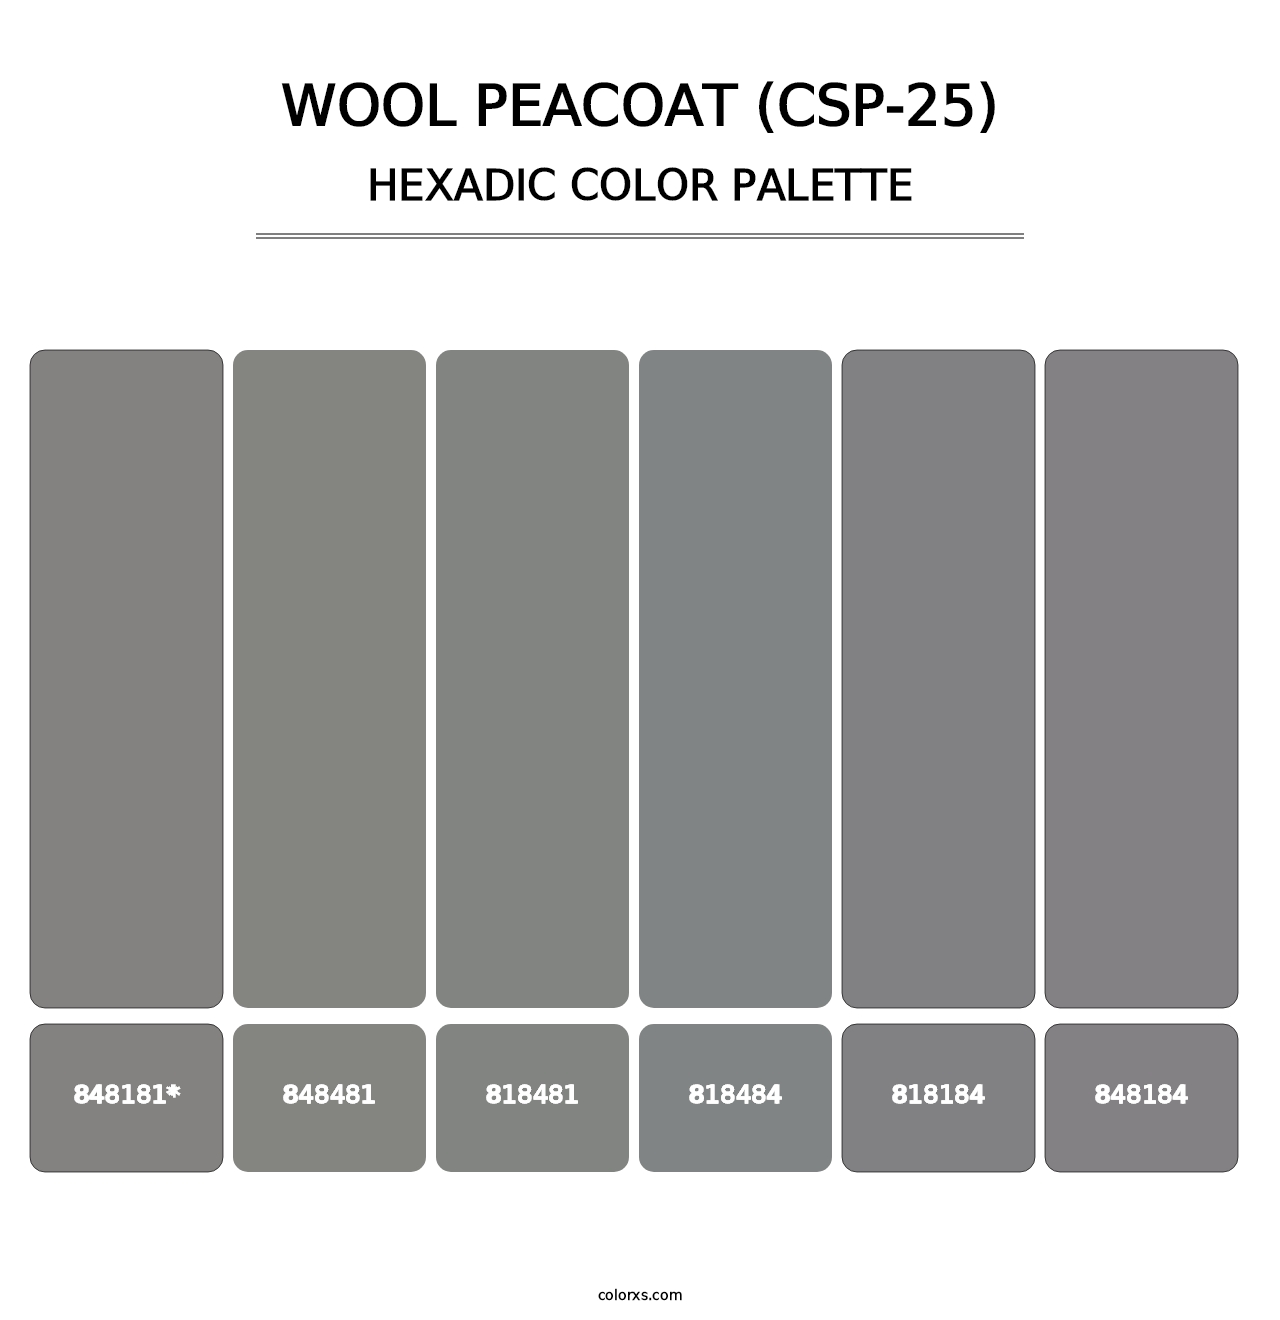 Wool Peacoat (CSP-25) - Hexadic Color Palette